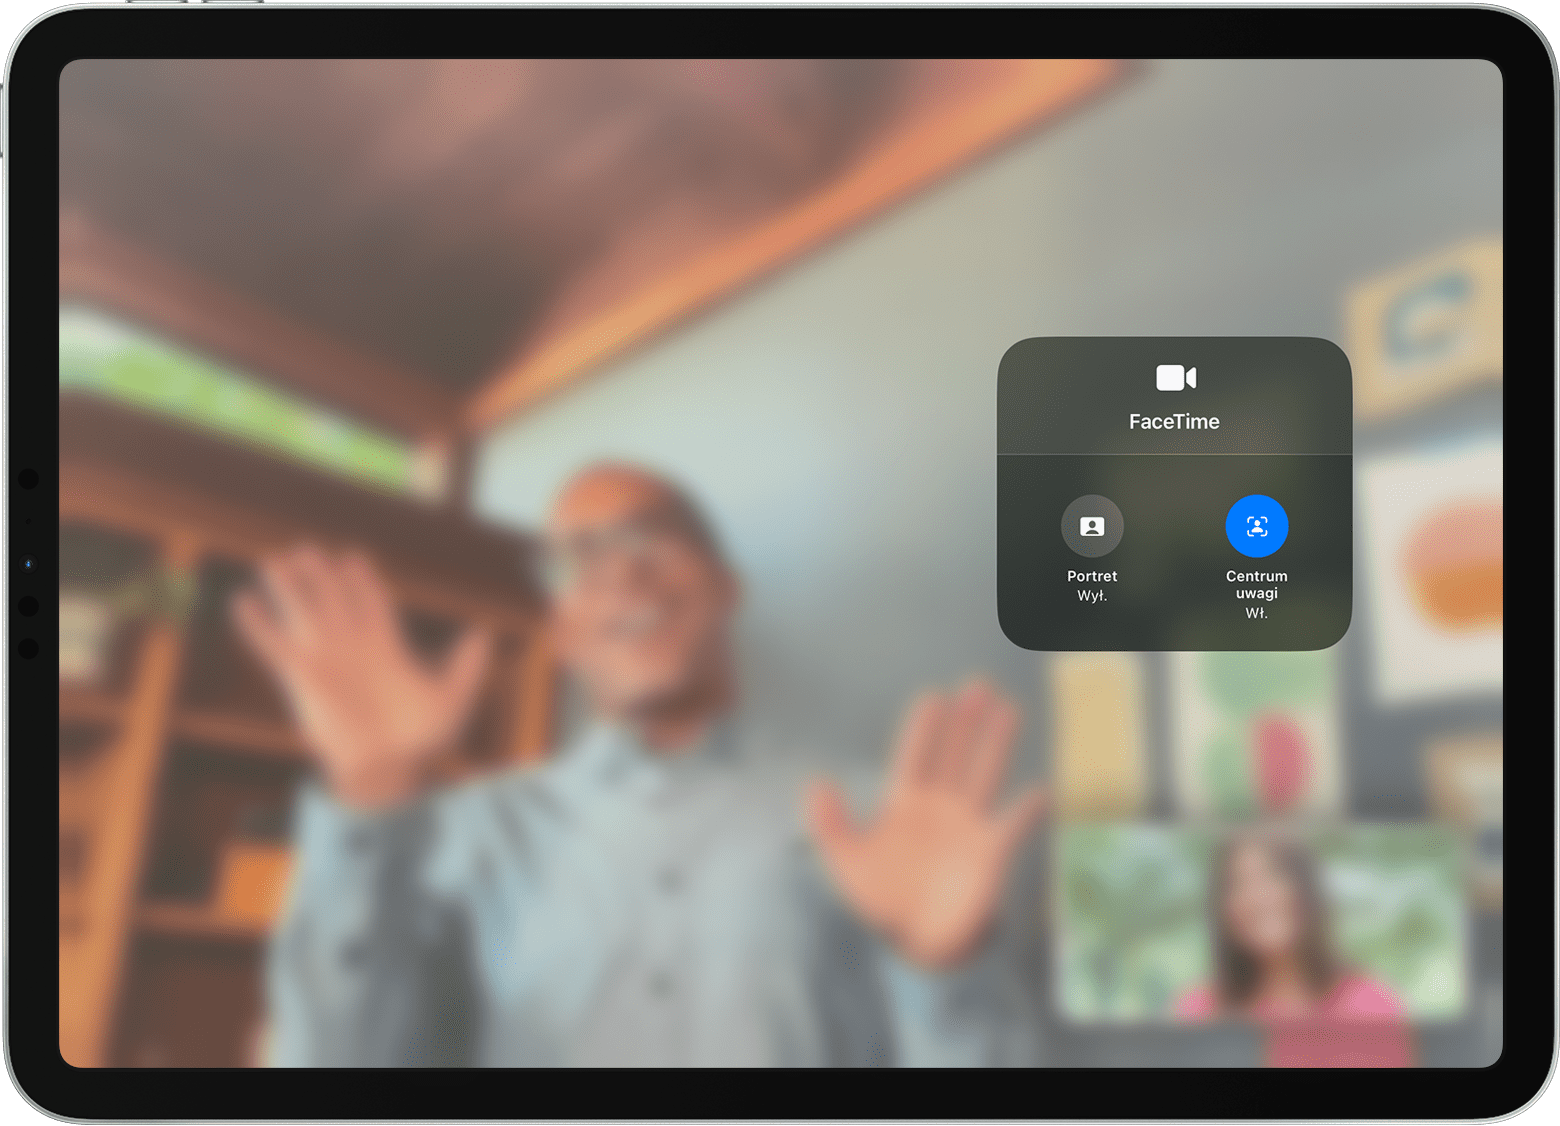 Ekran iPada wyświetlający połączenie FaceTime z widocznymi opcjami efektów wideo